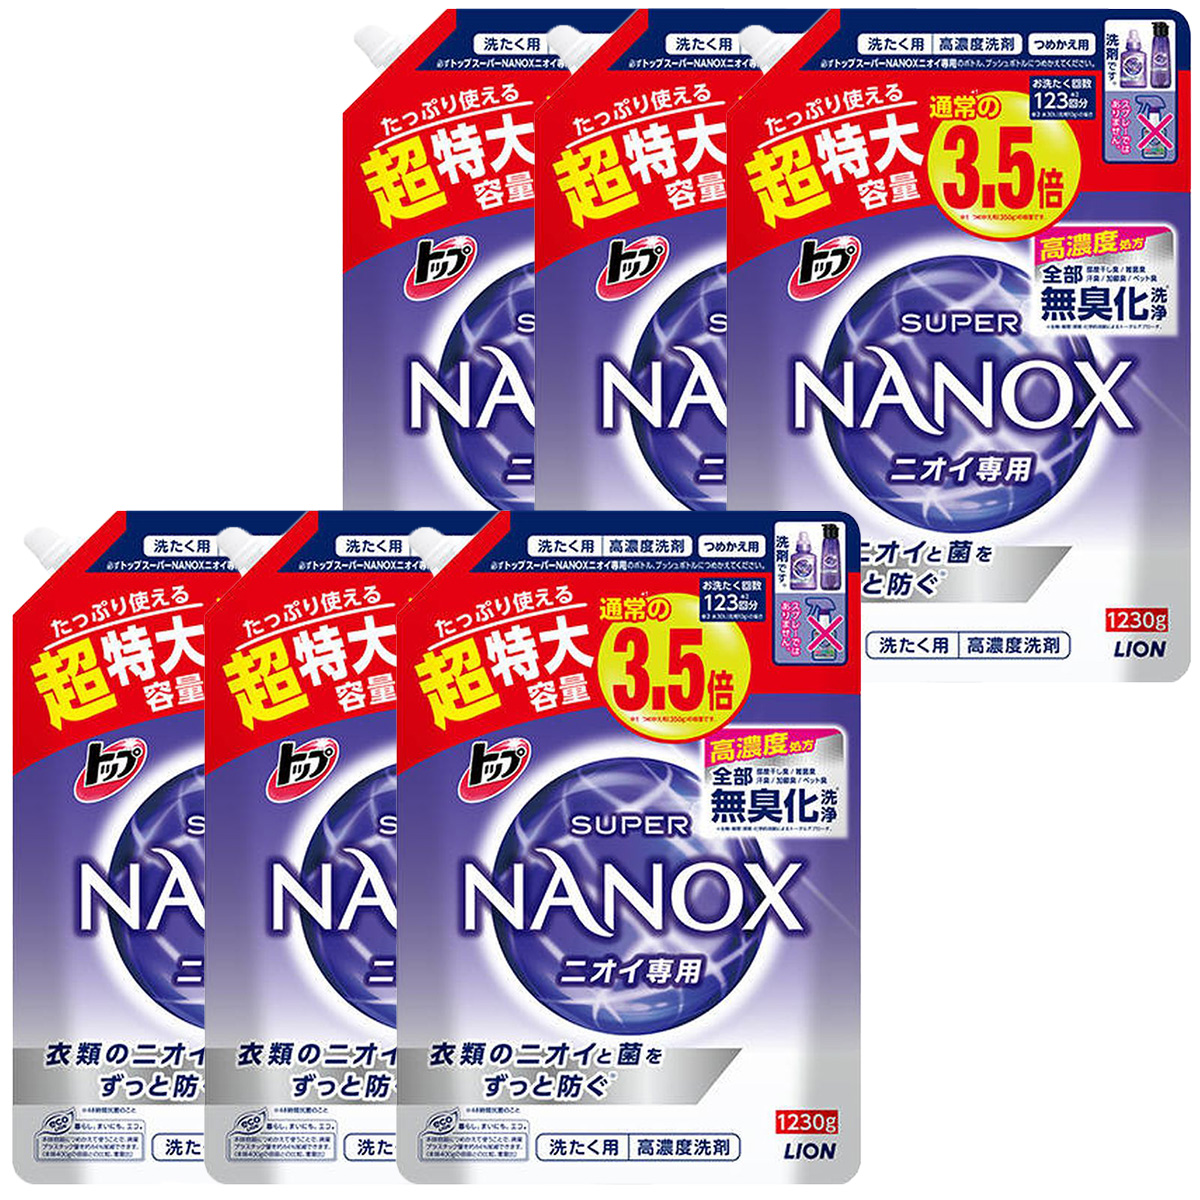 ニオイ専用 スーパーナノックス 1230g 16袋 NANOX Ninkishouhin - 洗剤/柔軟剤 - wsimarketingedge.com